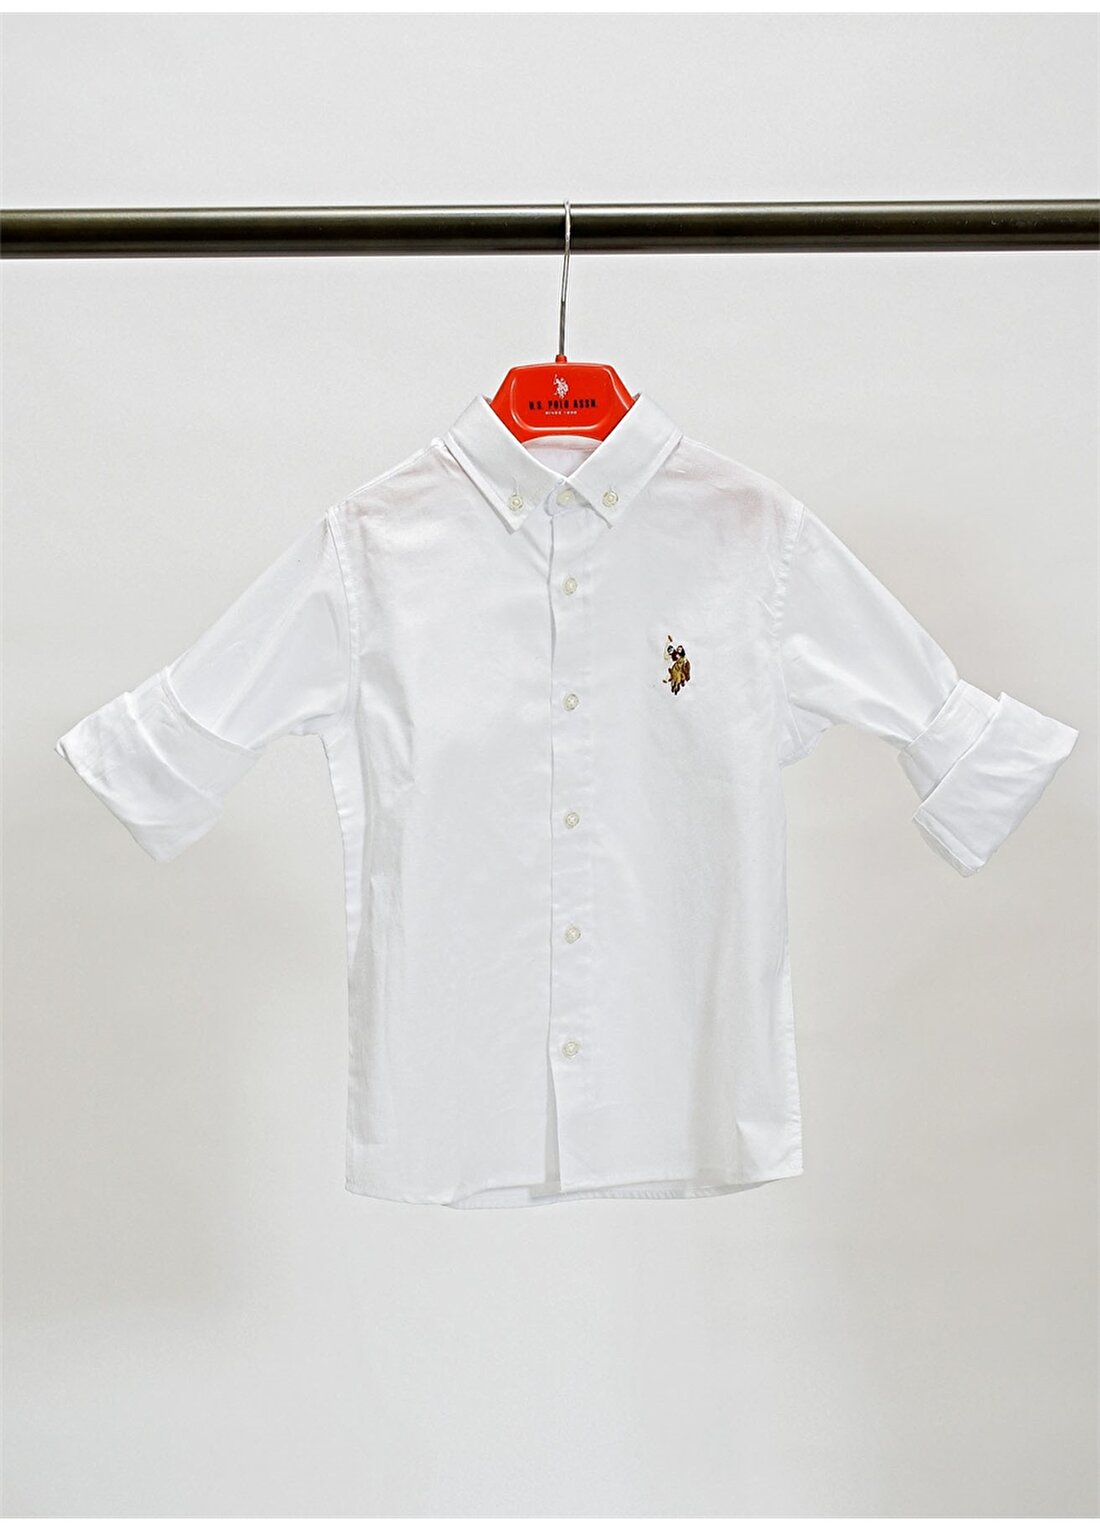 U.S. Polo Assn. Desenli Beyaz Erkek Çocuk Gömlek CEDCOLORKIDS021Y-VR013